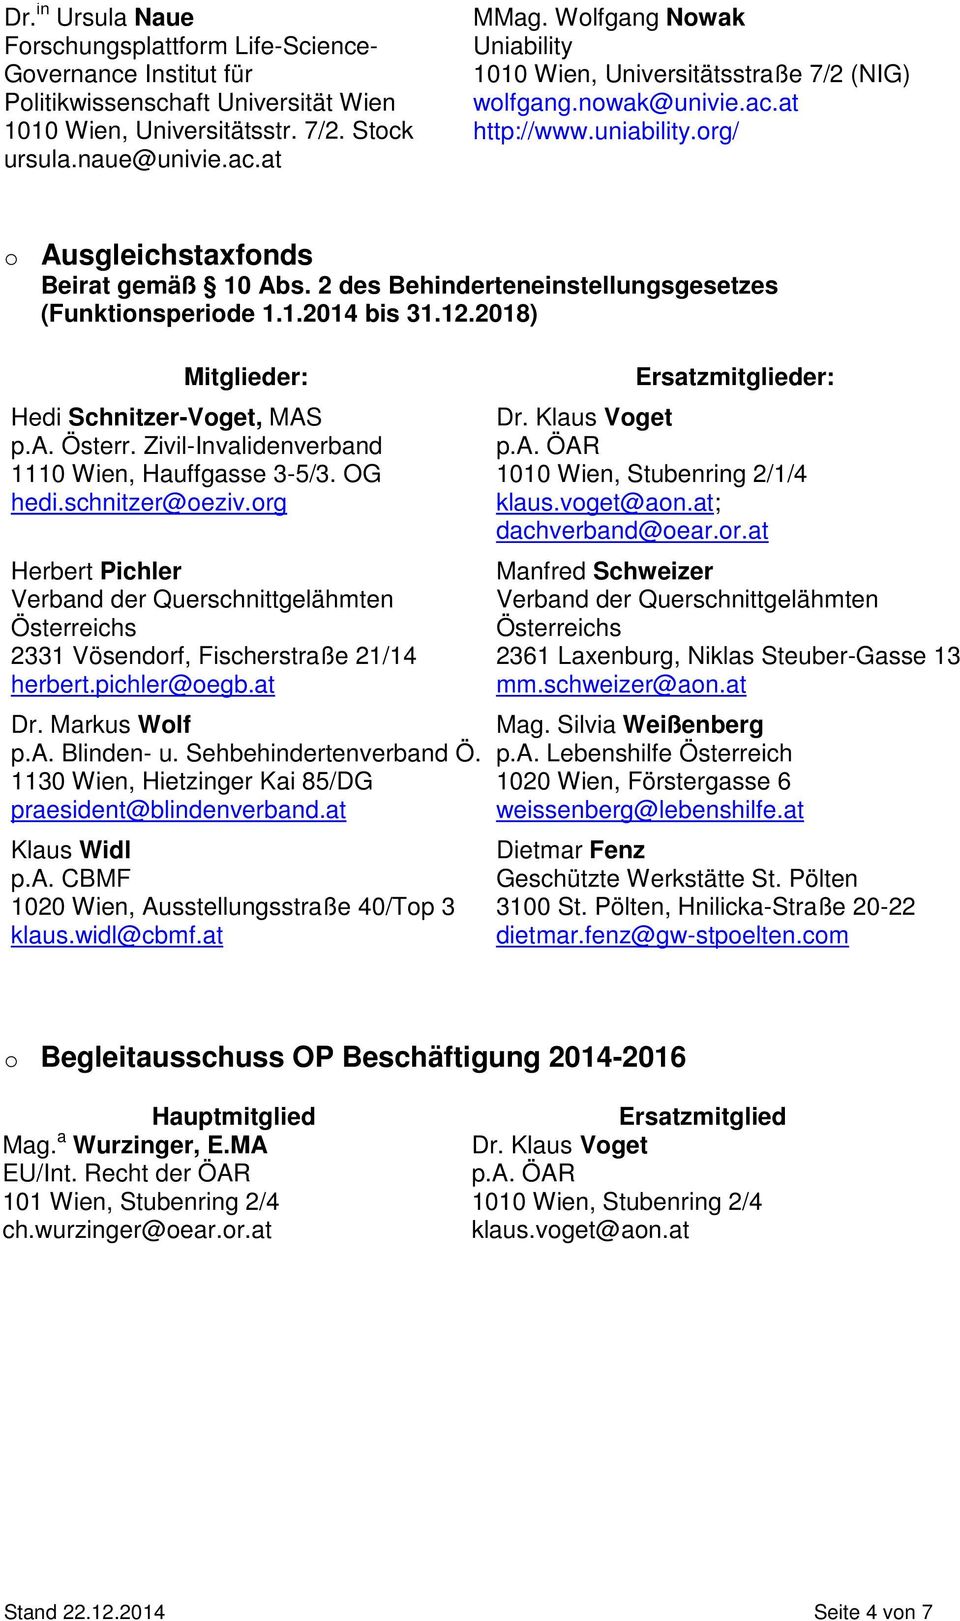 2 des Behinderteneinstellungsgesetzes (Funktinsperide 1.1.2014 bis 31.12.2018) Mitglieder: Hedi Schnitzer-Vget, MAS p.a. Österr. Zivil-Invalidenverband 1110 Wien, Hauffgasse 3-5/3. OG hedi.